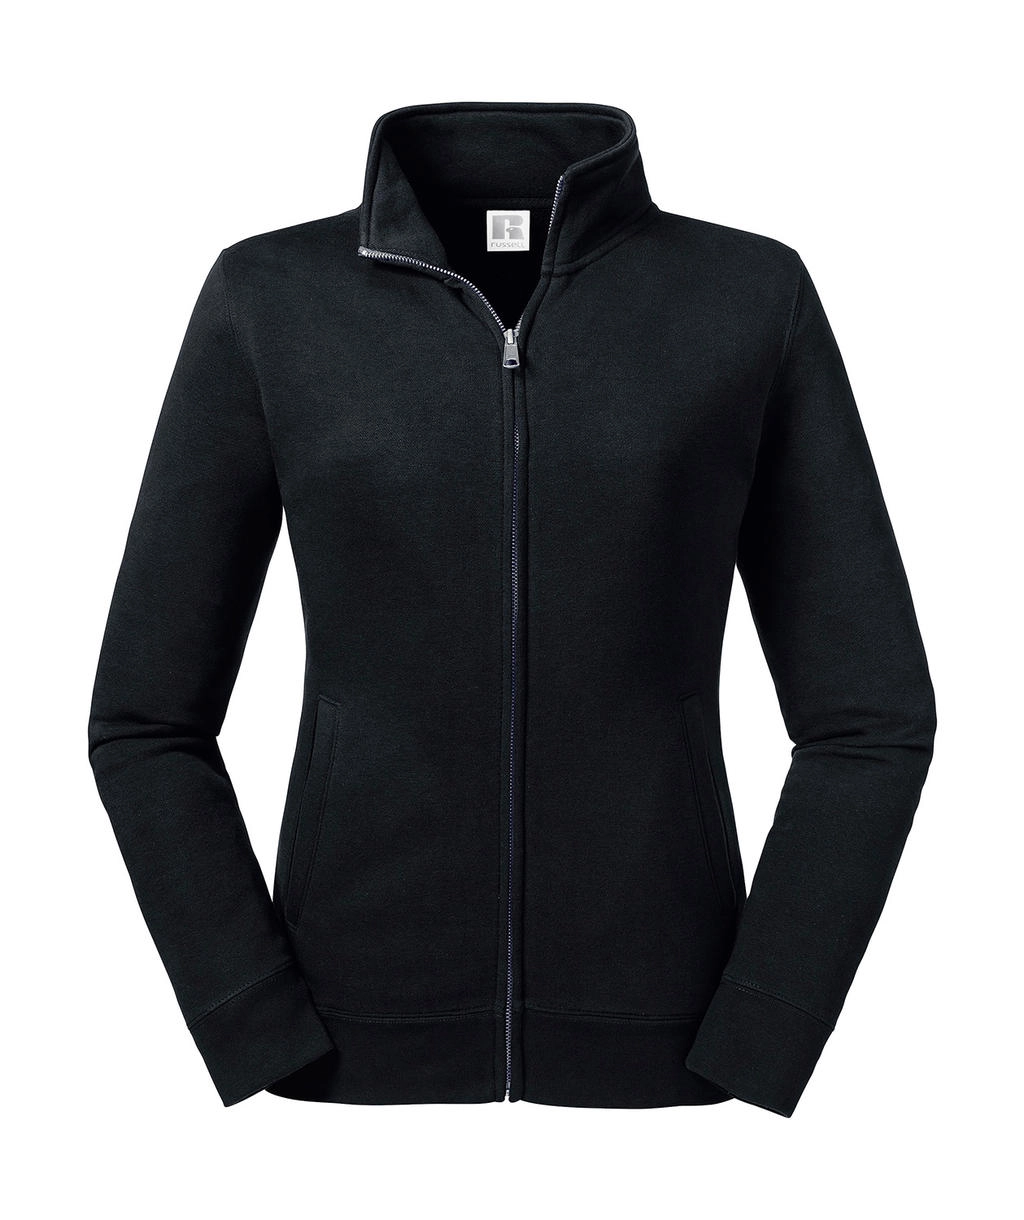 Ladies` Authentic Sweat Jacket zum Besticken und Bedrucken in der Farbe Black mit Ihren Logo, Schriftzug oder Motiv.